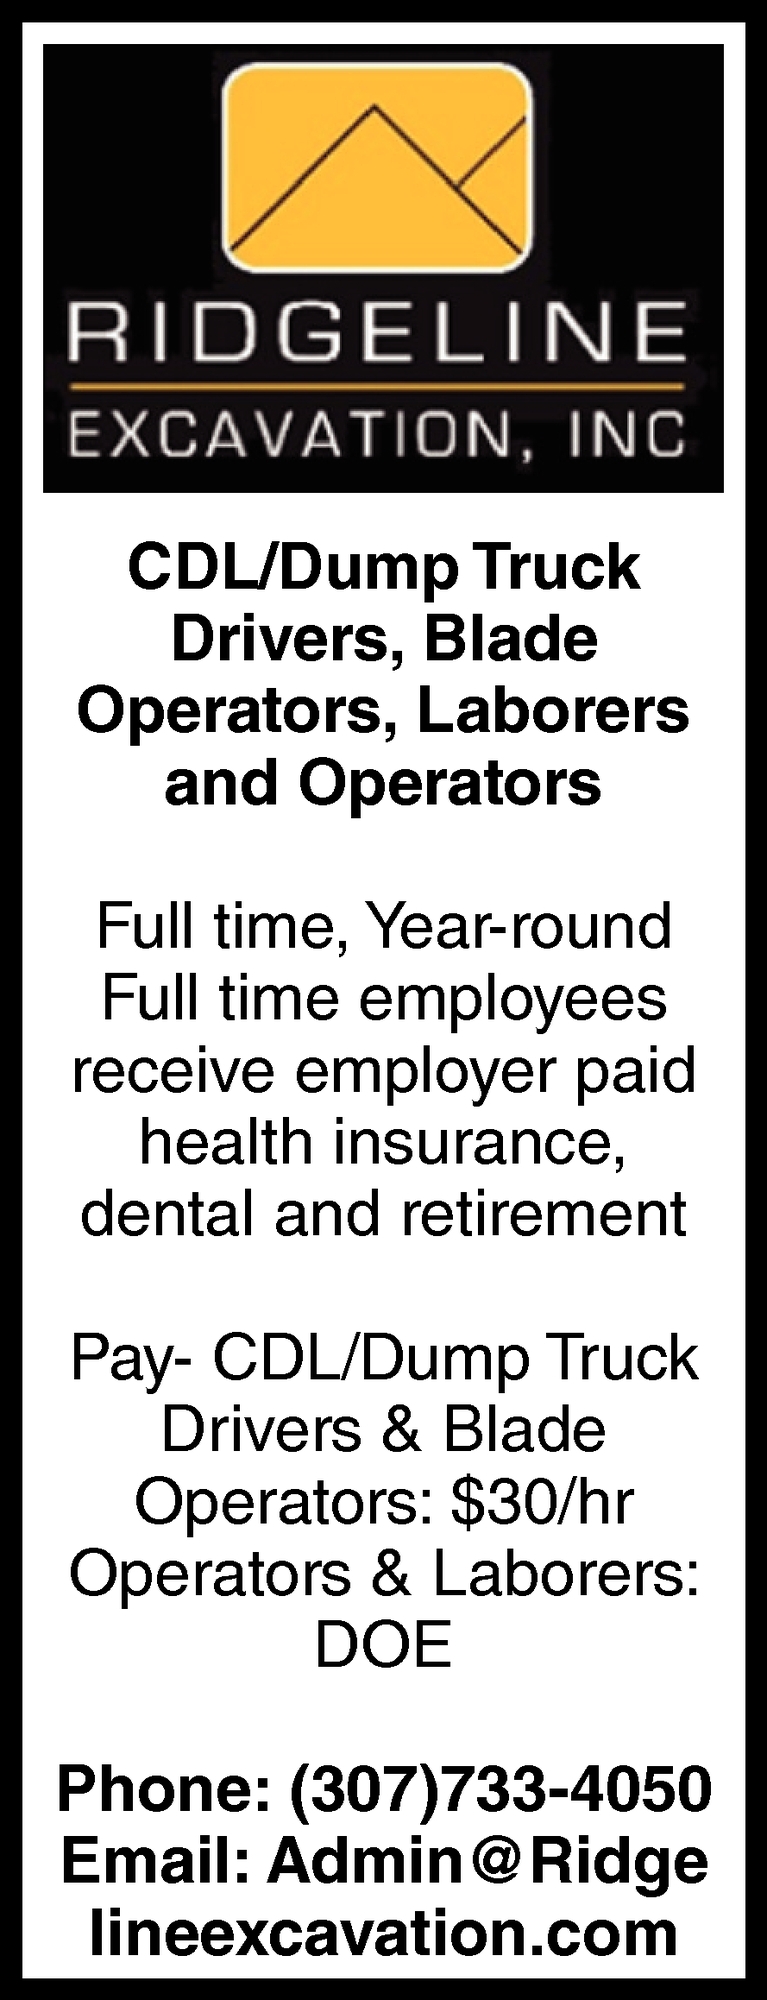 CDL/Dump Truck Drivers